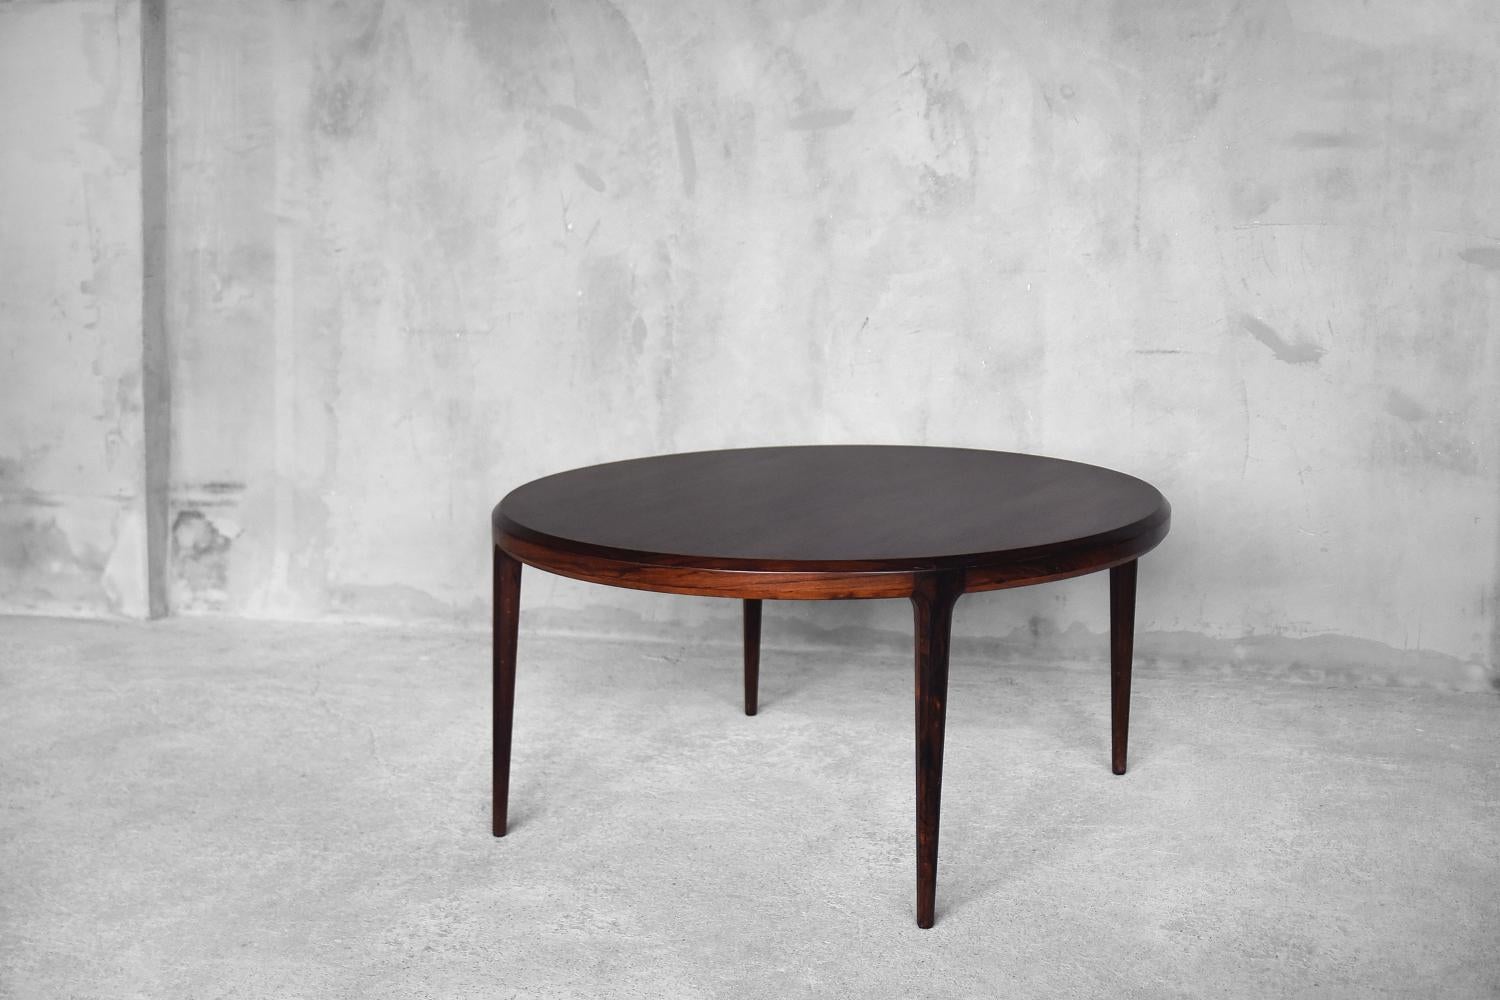 Cette magnifique table basse en bois de rose a été conçue par Johannes Andersen pour C.F.C. Silkebørg et fabriquée au Danemark dans les années 1960. C'est un modèle numéro 283. Cette série de tables était l'une des plus populaires d'Andersen. Les